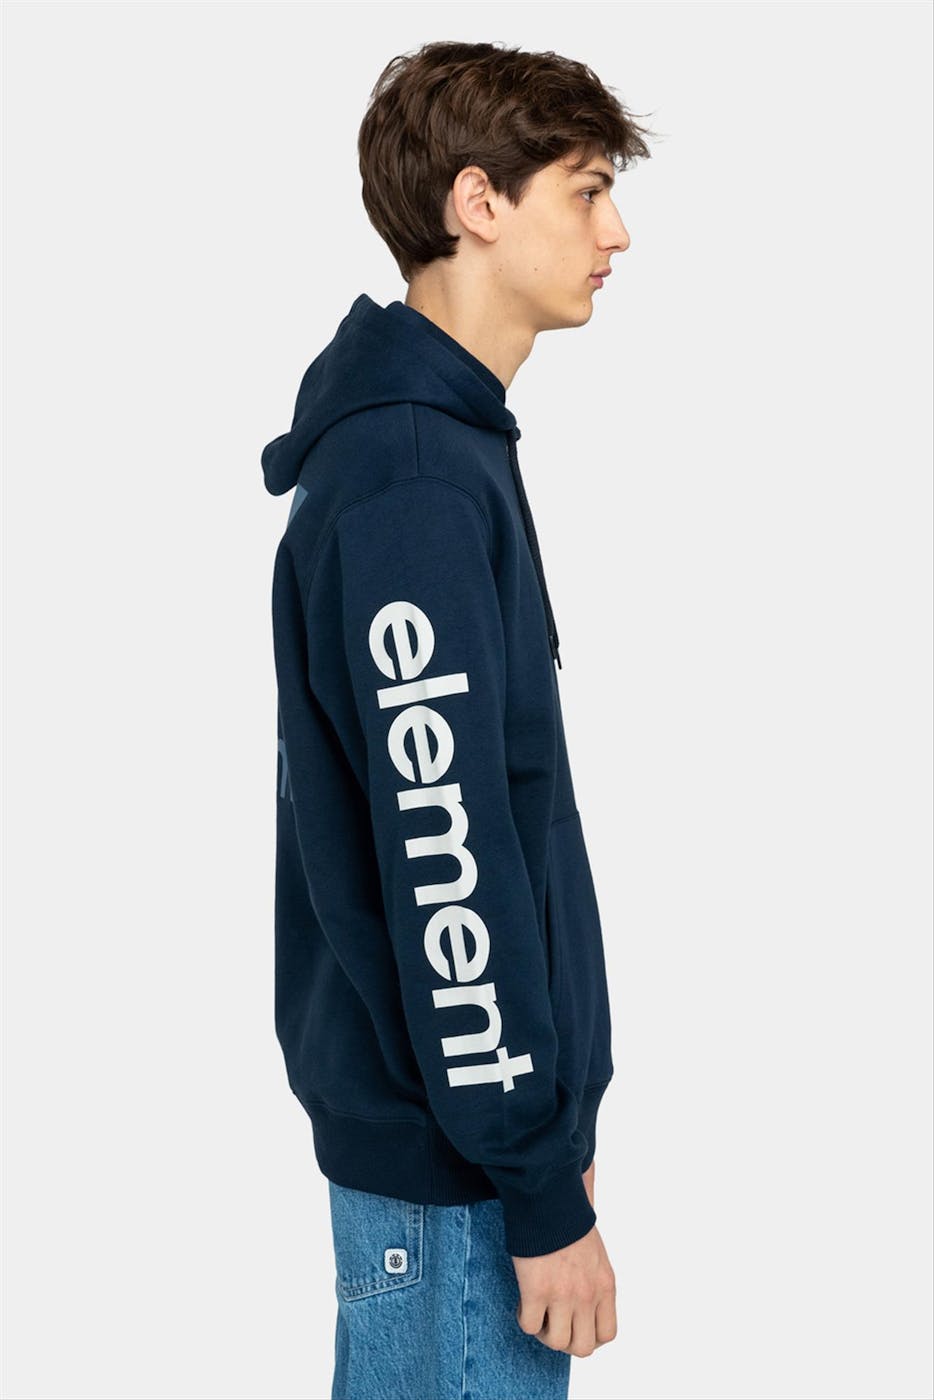 Element - Donkerblauwe Joint hoodie